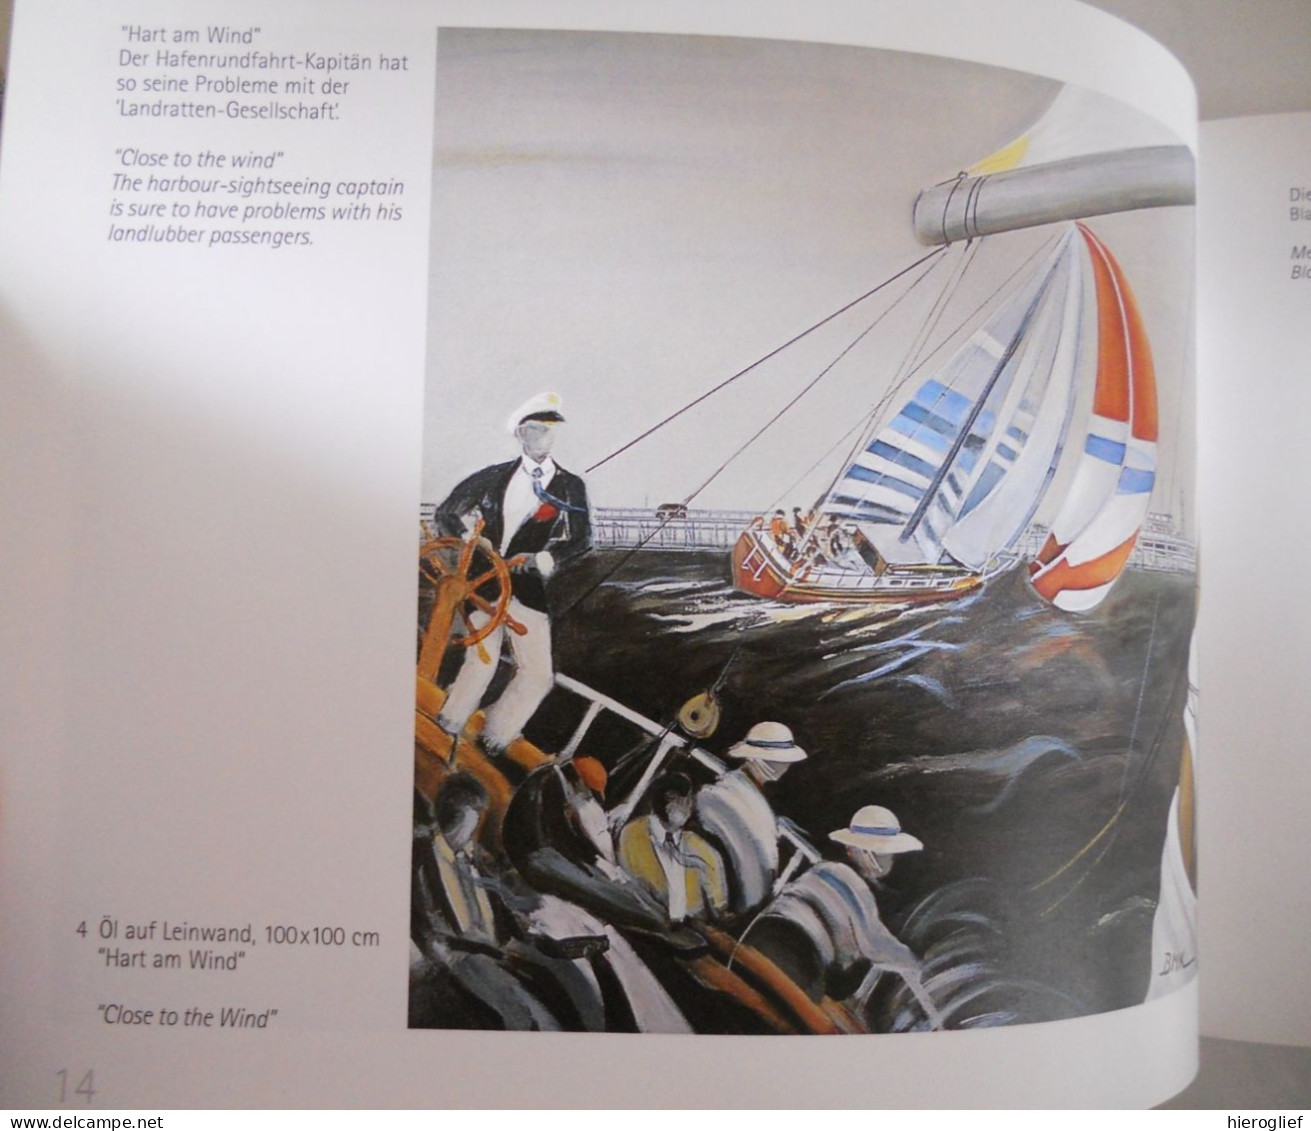 BMK 2001 _ 75 Jahre - Bruno Meyer Kruse : Ein Leben Für Technische Innovation Und Malkunst - Katalog Gemalten Bildern - Pittura & Scultura